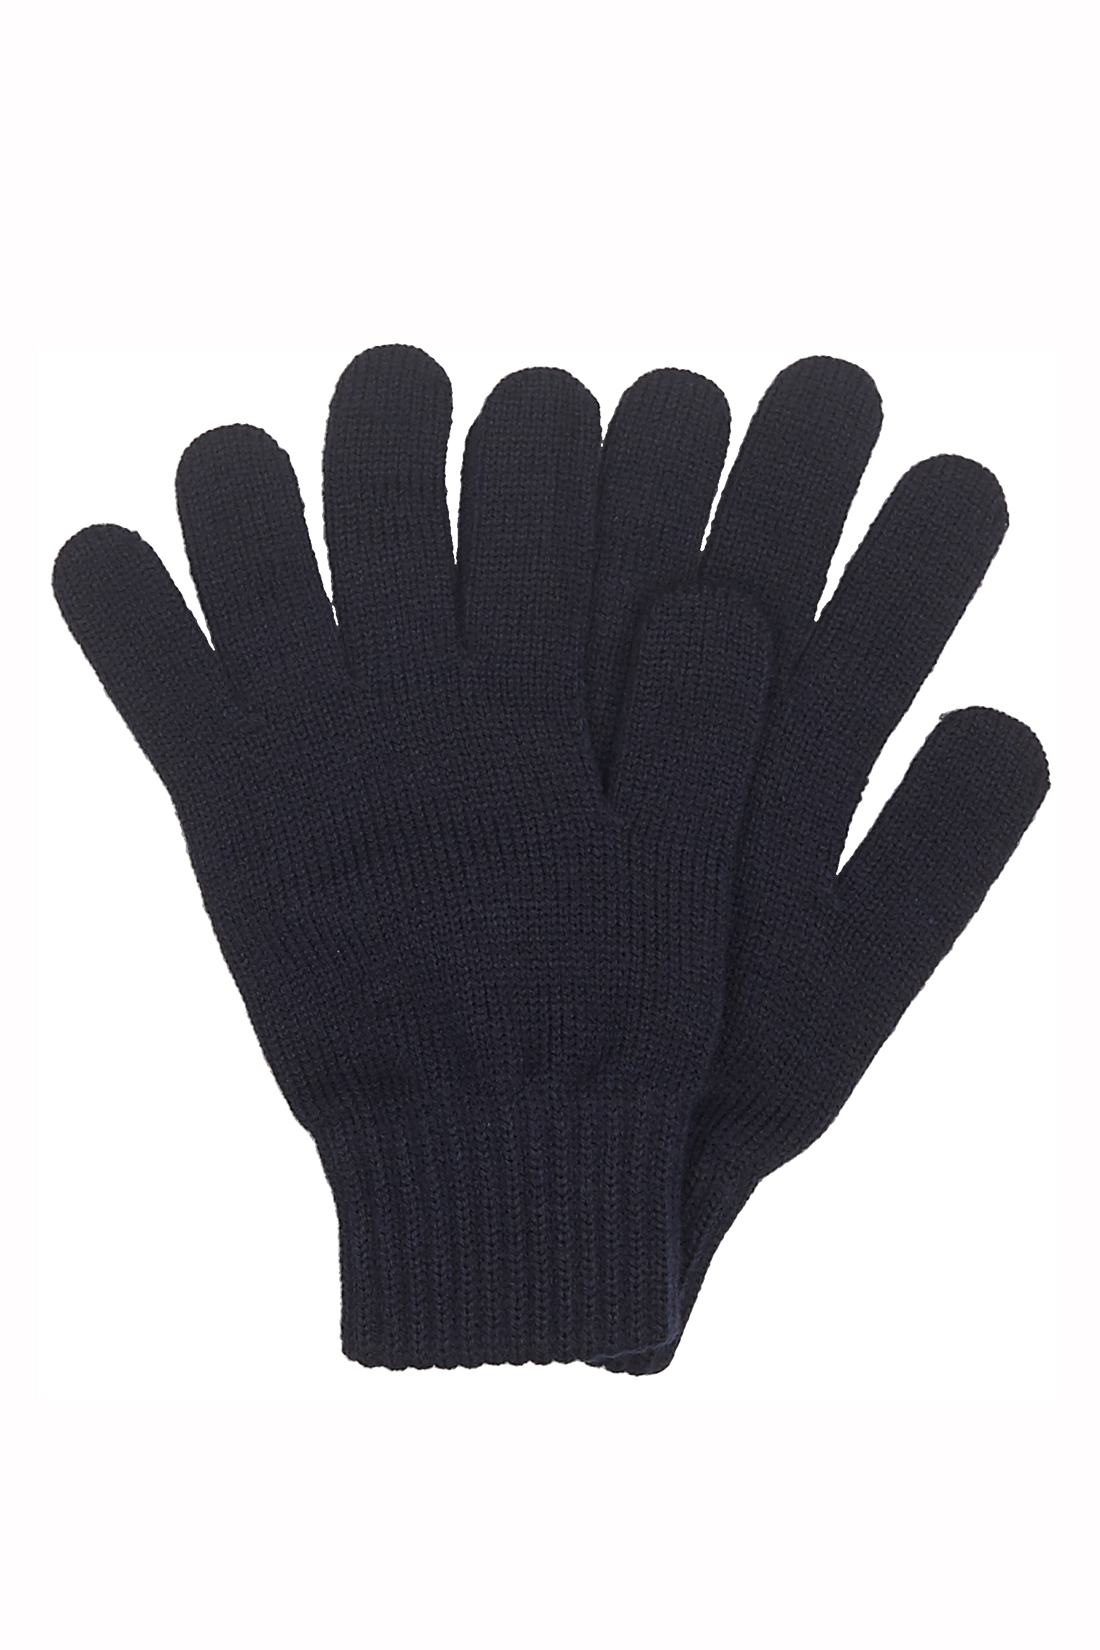 Полушерстяные перчатки (арт. baon B868504), размер Без/раз, цвет синий